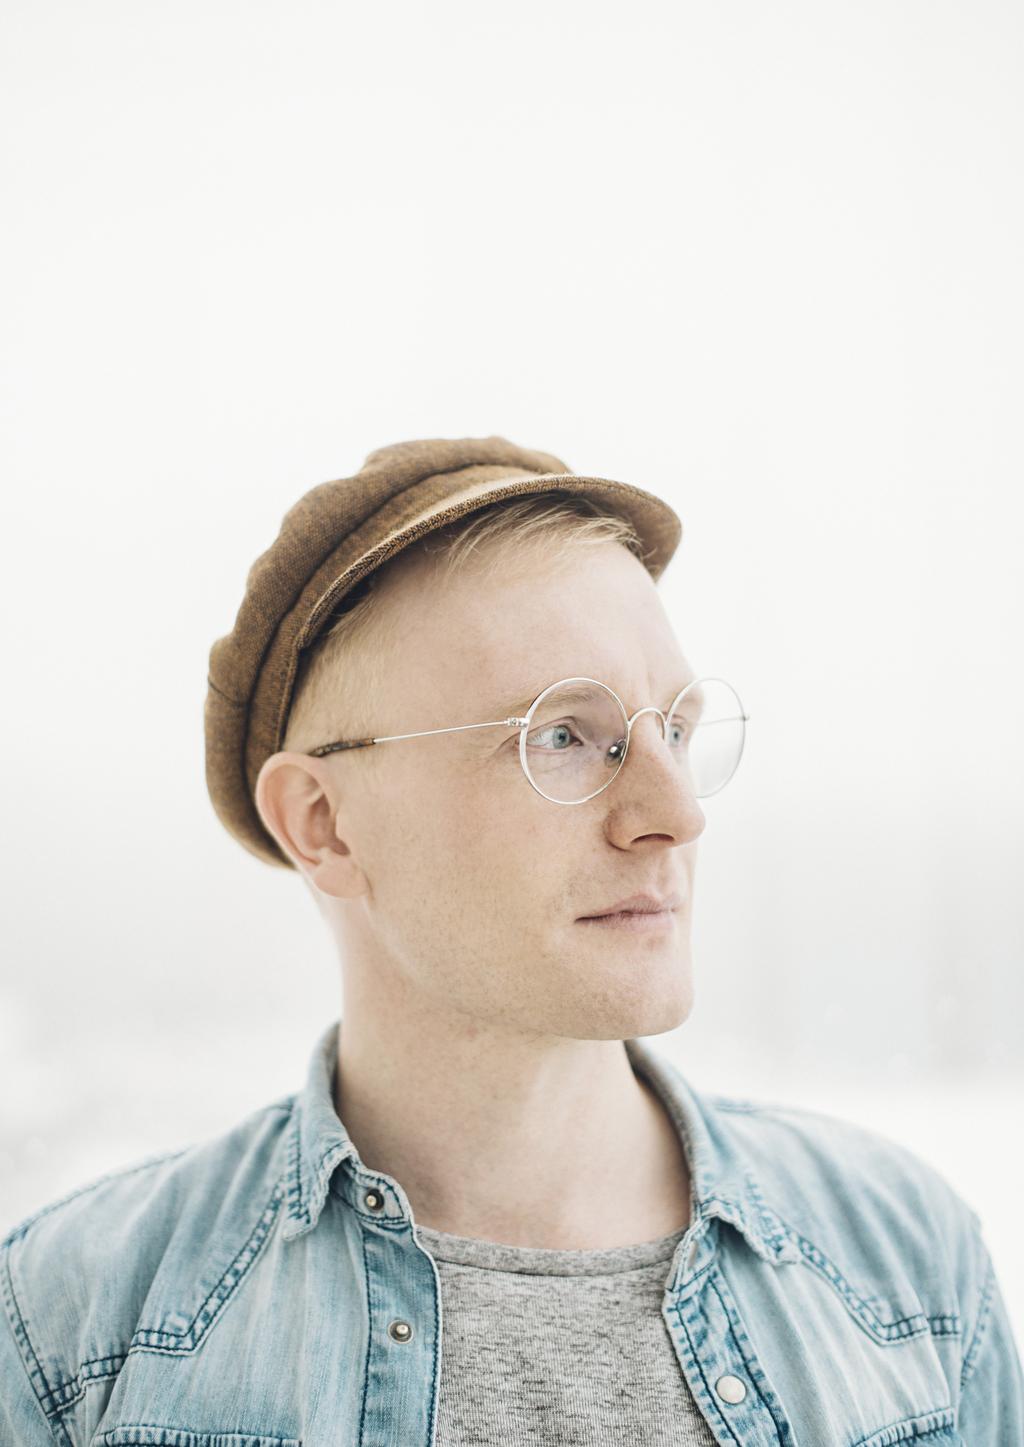 SÄVELTÄJÄ LAURI SUPPONEN Lauri Supponen on vuonna 1988 syntynyt helsinkiläinen säveltäjä.